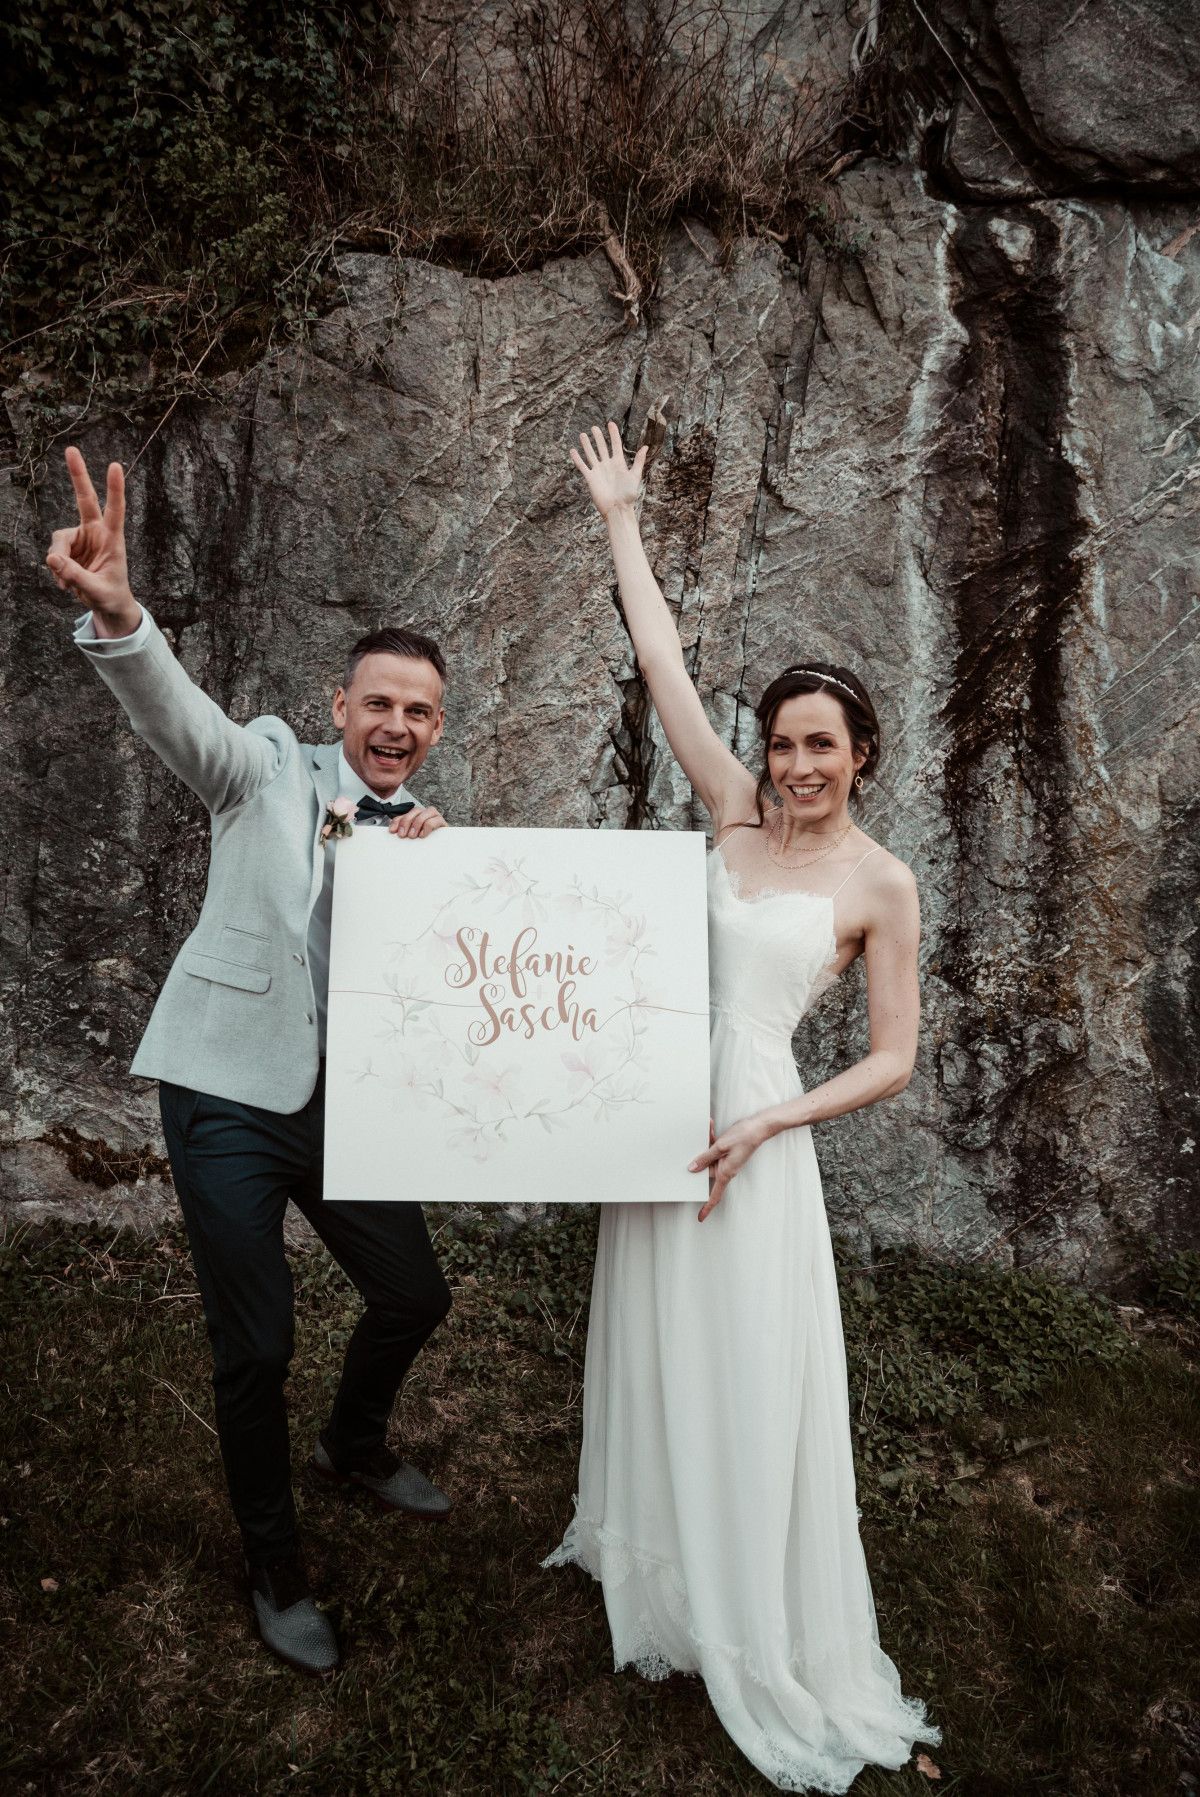 Hochzeitszeitung Ideen: Brautpaar auf ihrer Hochzeit mit einem Bild ihrer Namen in den Händen